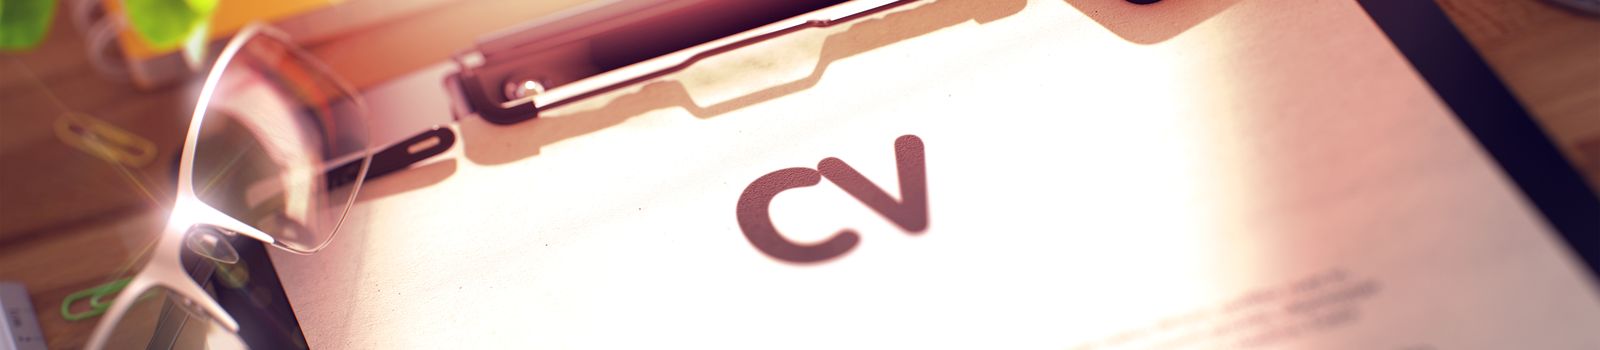 CV Clip Board - Member Vacancy  shutterstock_442058890.jpg